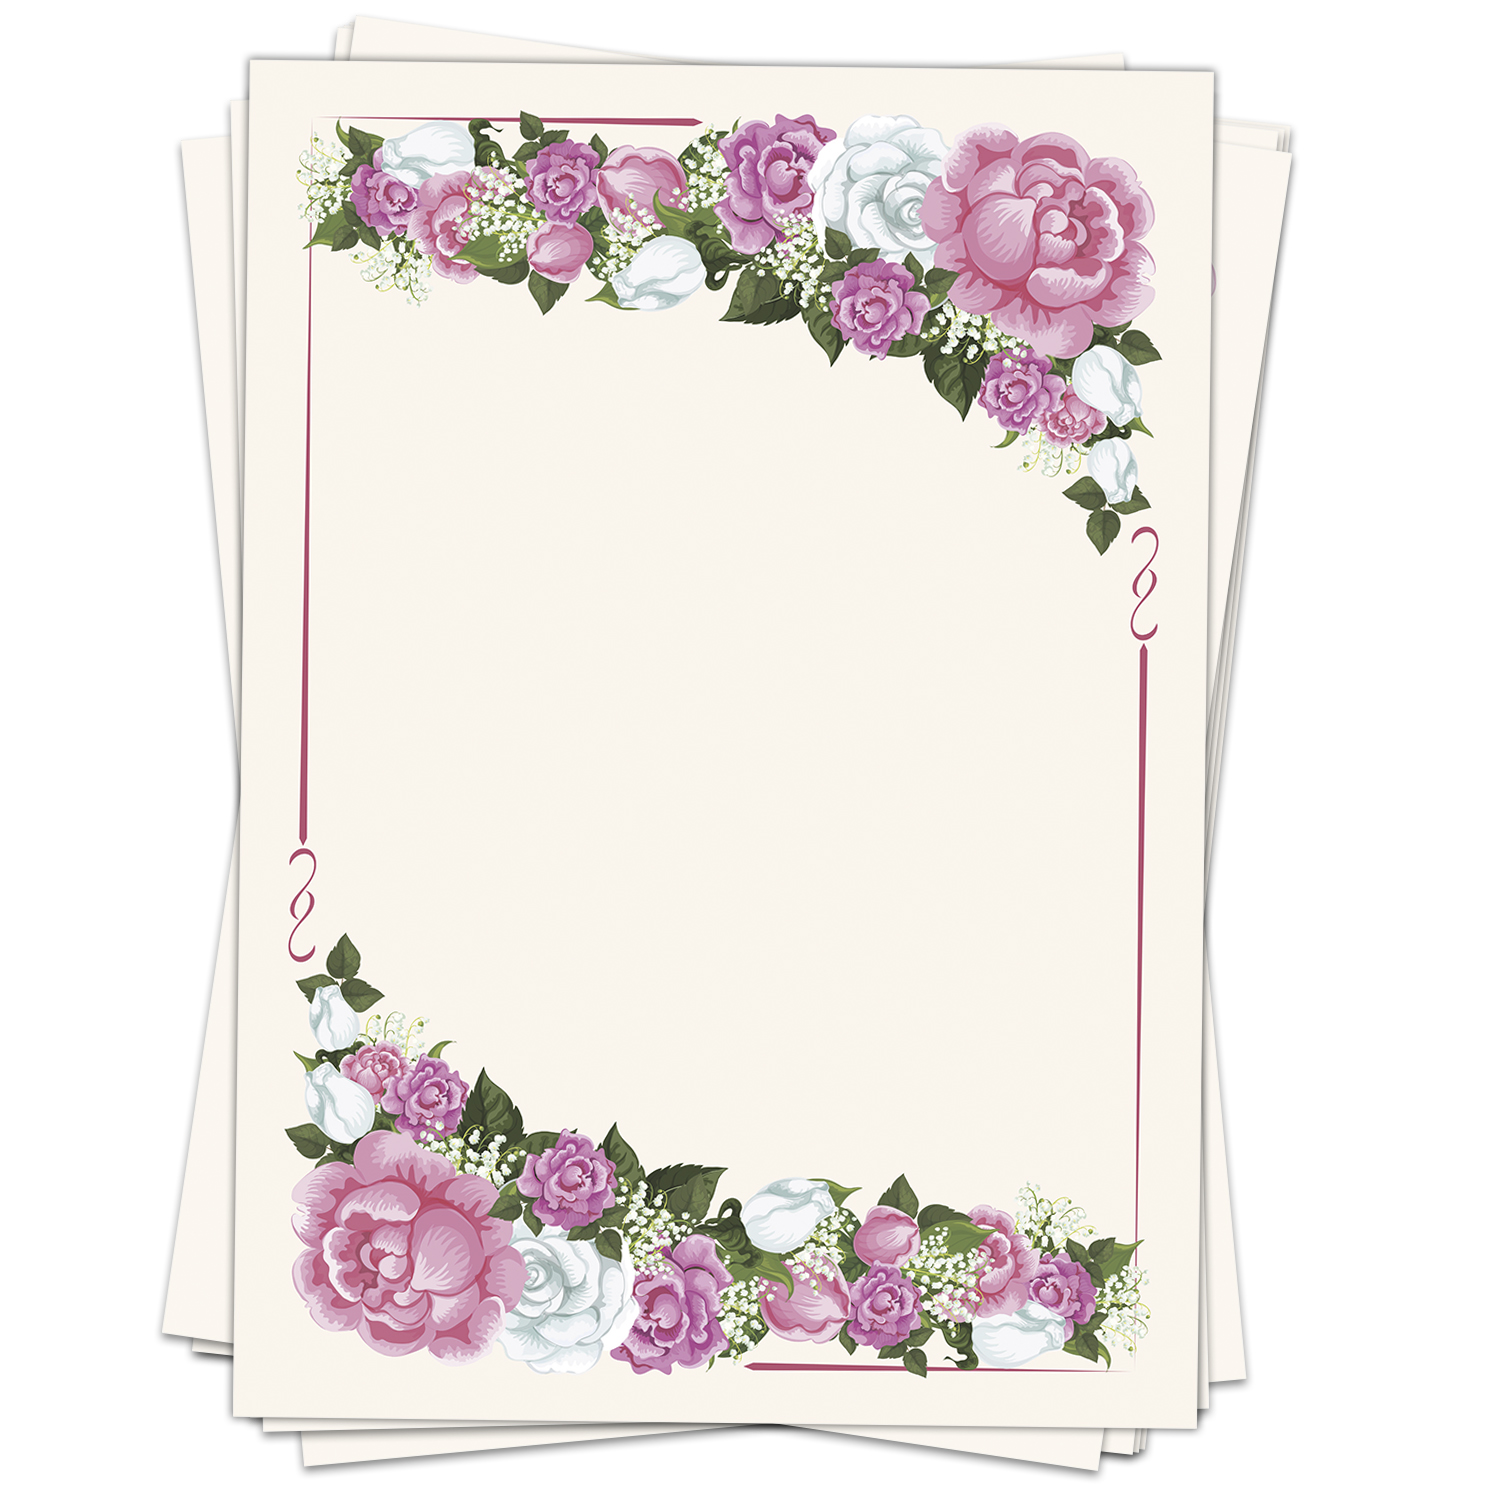 Motivpapier Briefpapier 20 Blatt DIN A4 rosa Rose Einladung Geburtstag Blumen 